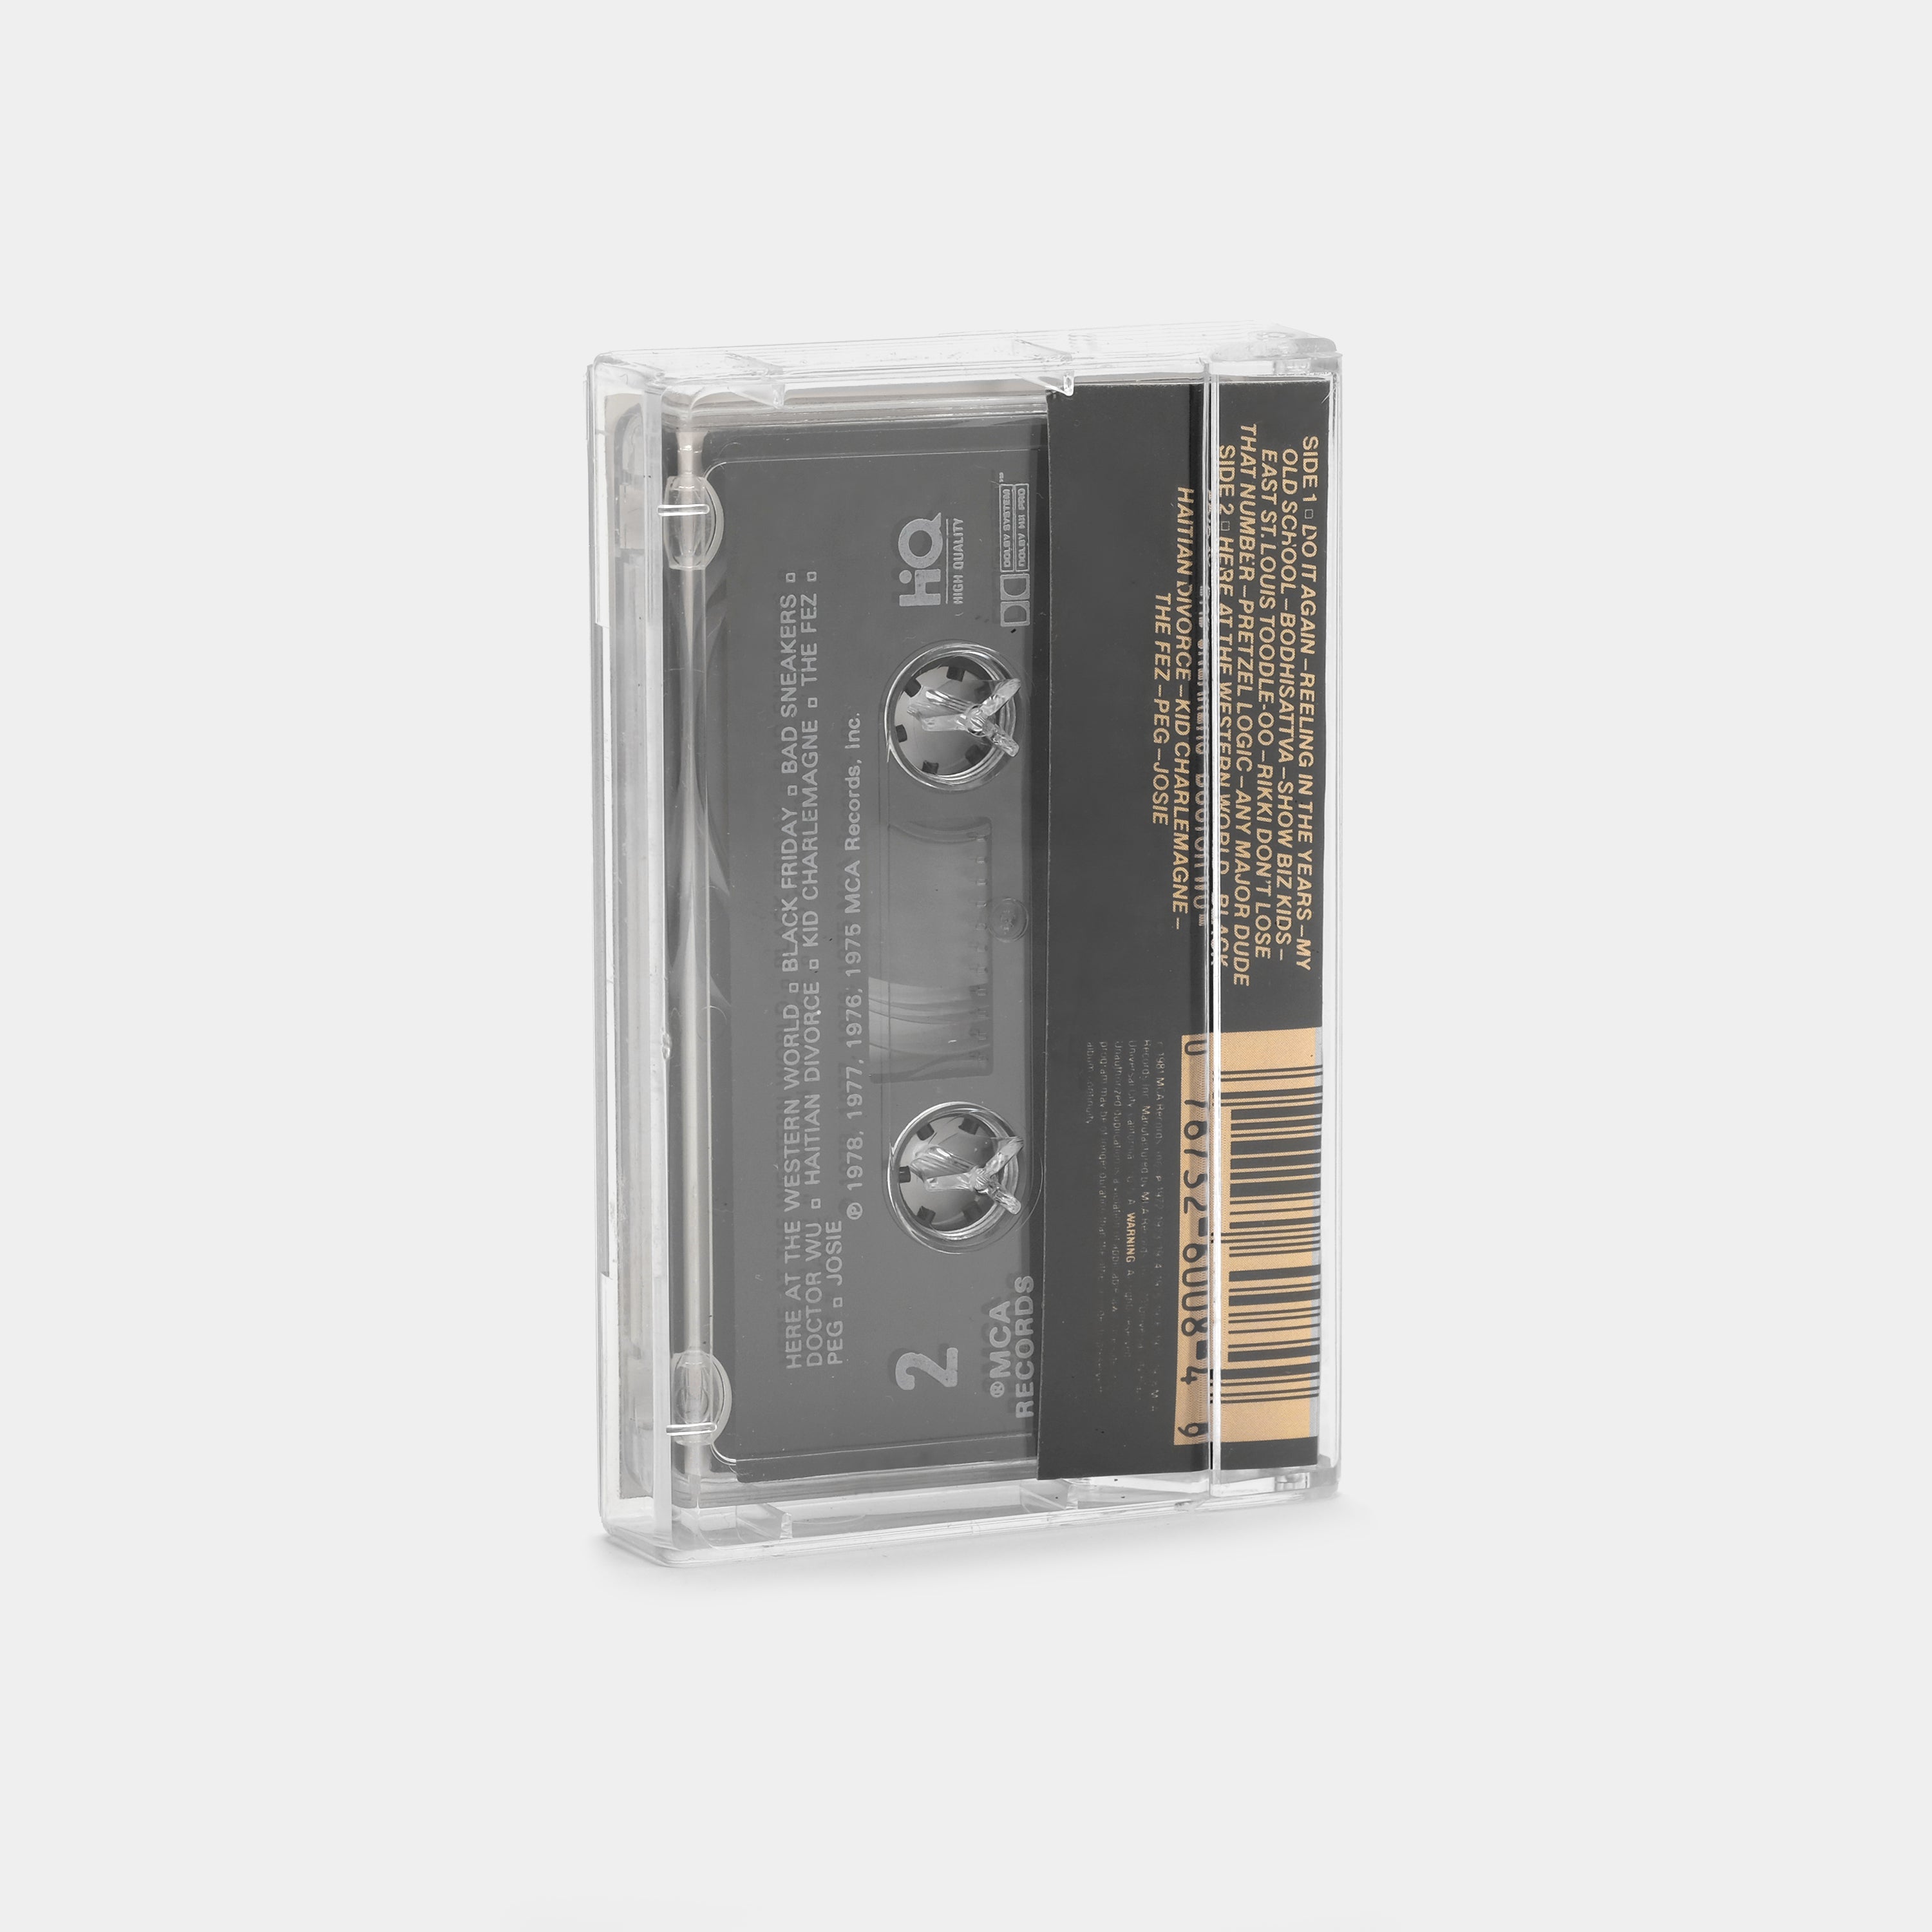 Steely Dan - Greatest Hits (1972-1978) Cassette Tape